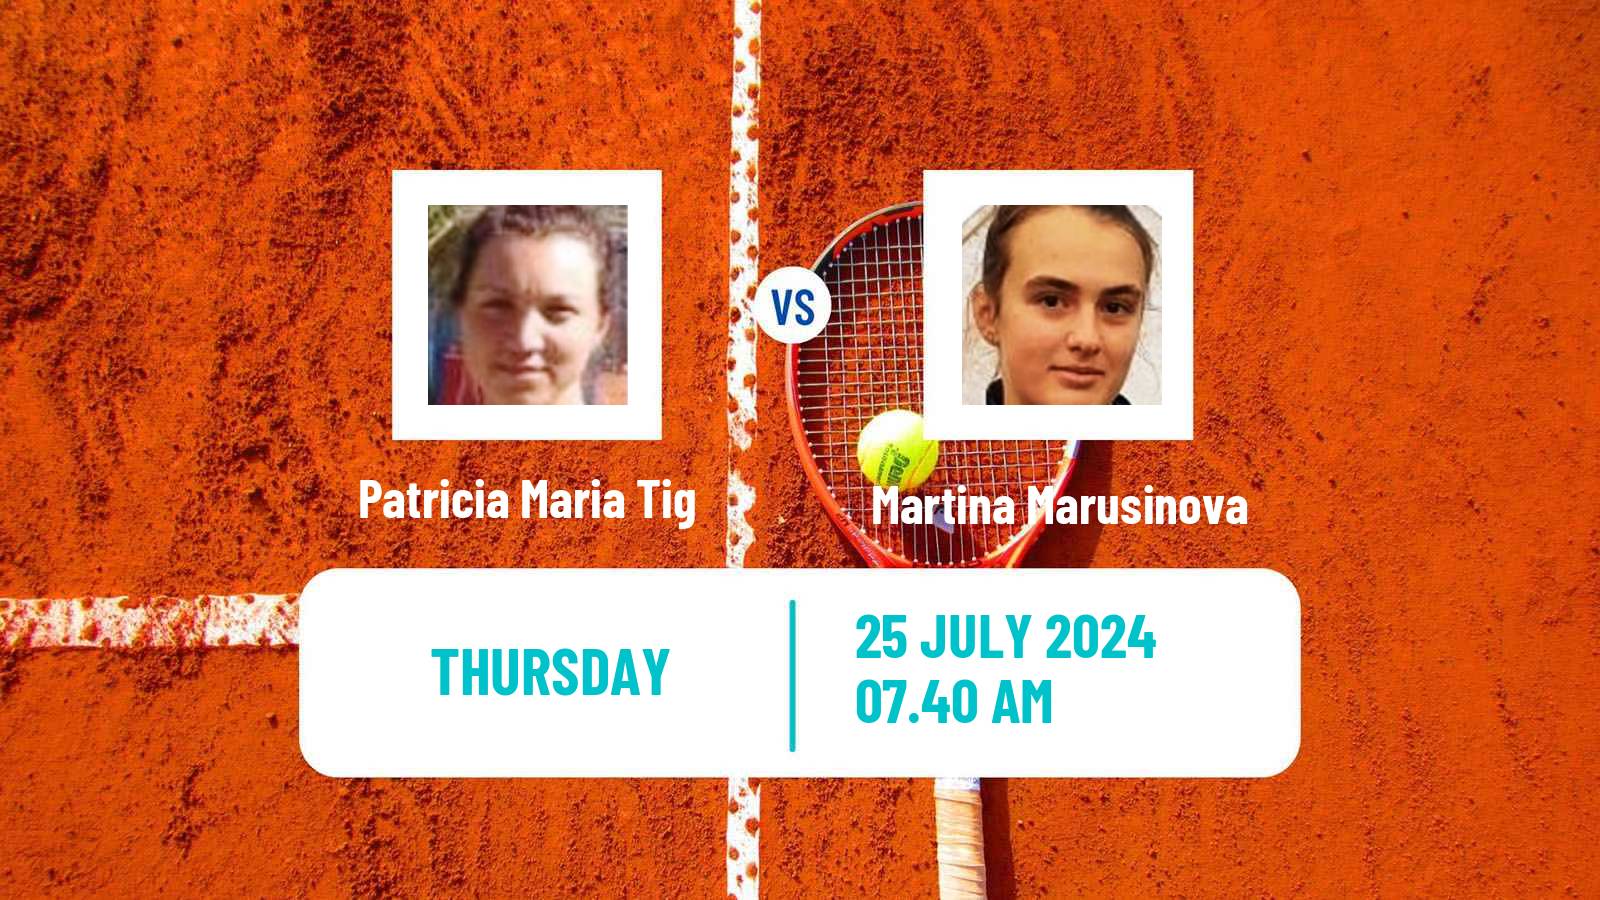 Tennis ITF W15 Satu Mare Women Patricia Maria Tig - Martina Marusinova